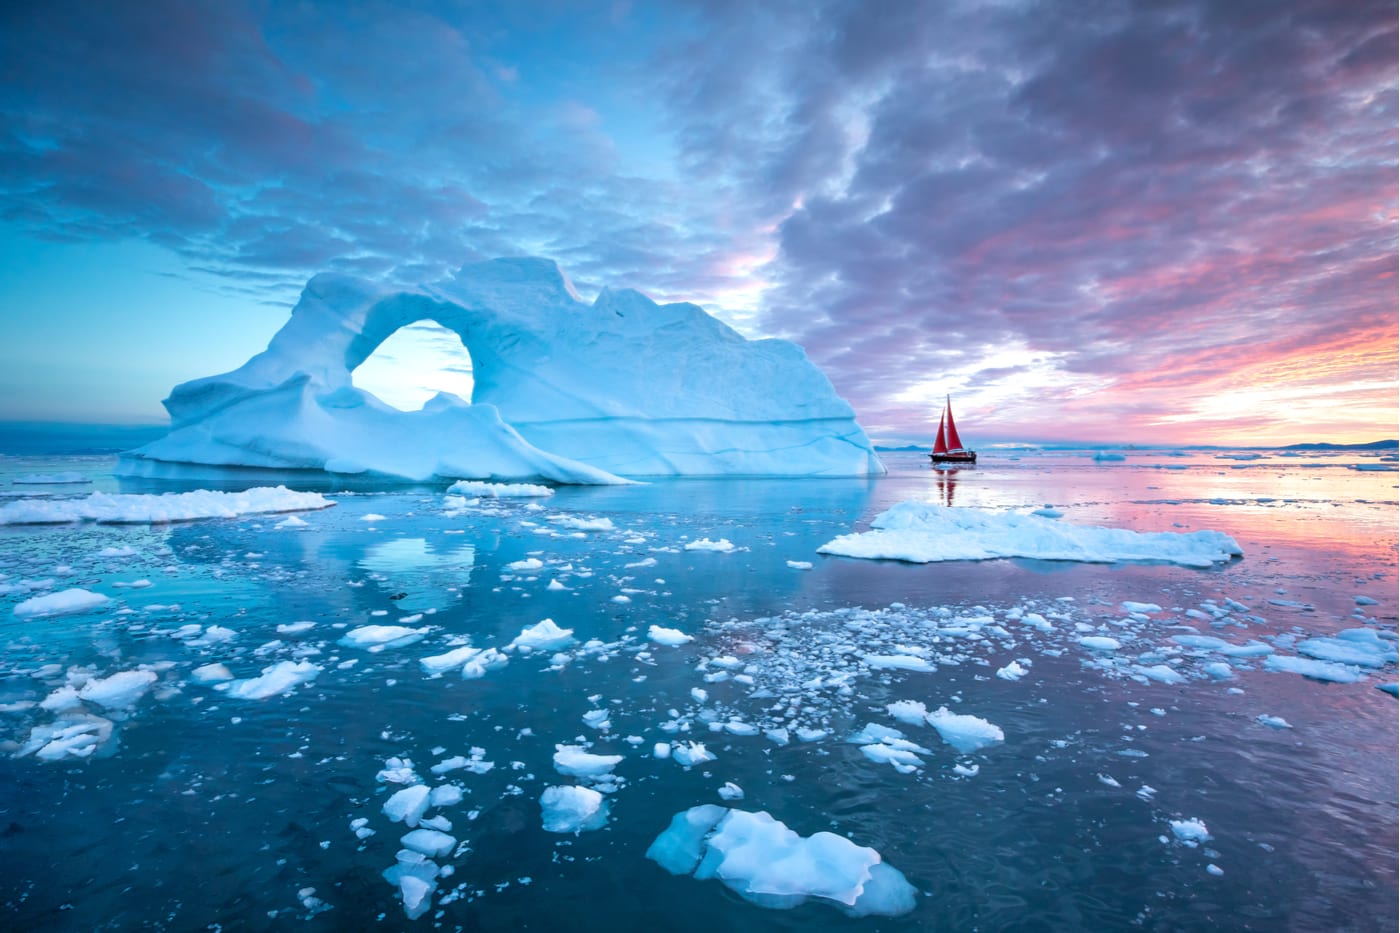 在格陵兰岛的冰山周围航行